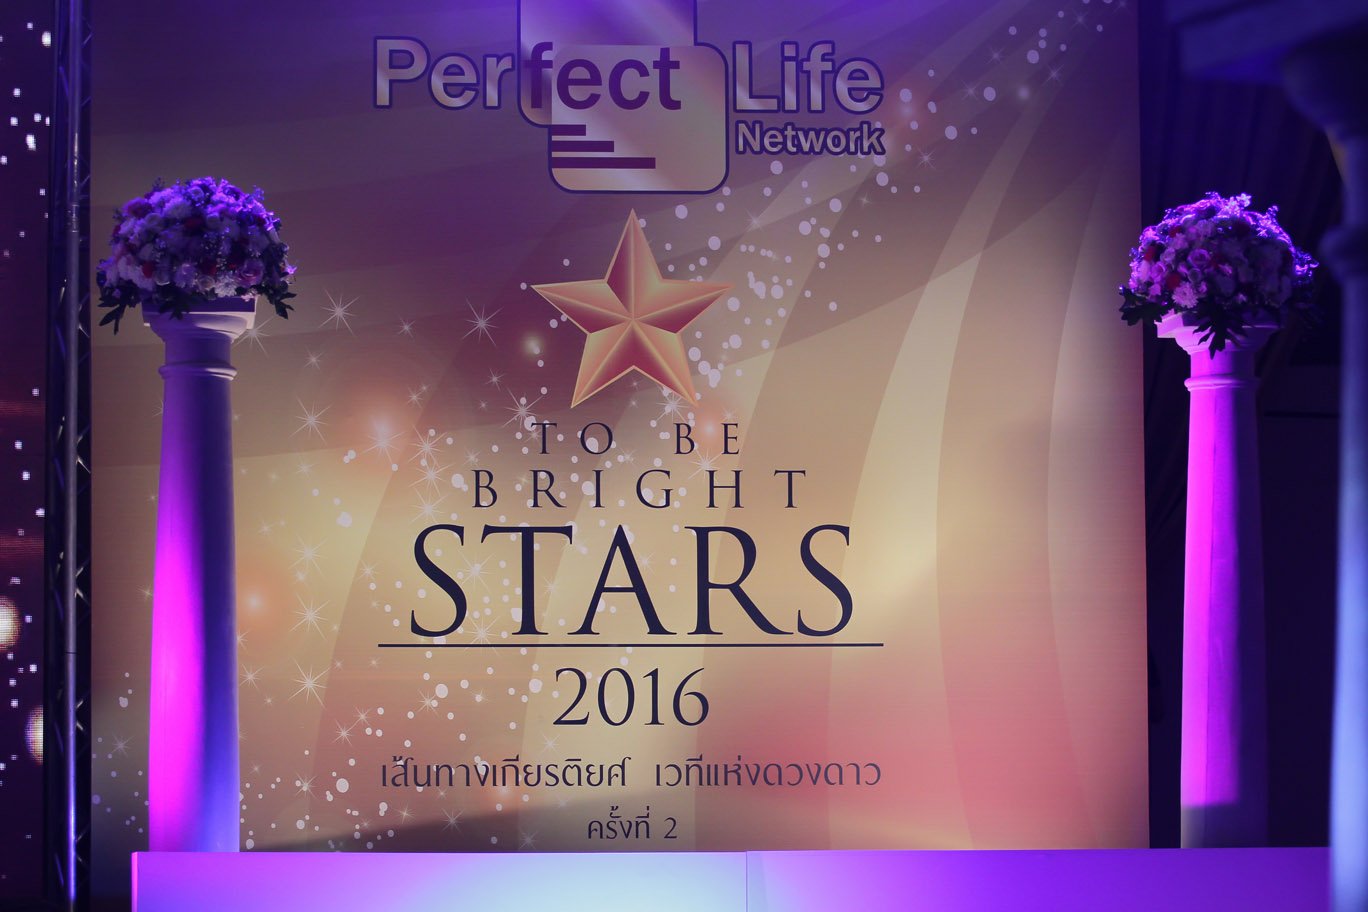 งานเวทีเกียรติยศ To Be Bright Stars 2016 ช่วงที่ 1 บรรยากาศงาน